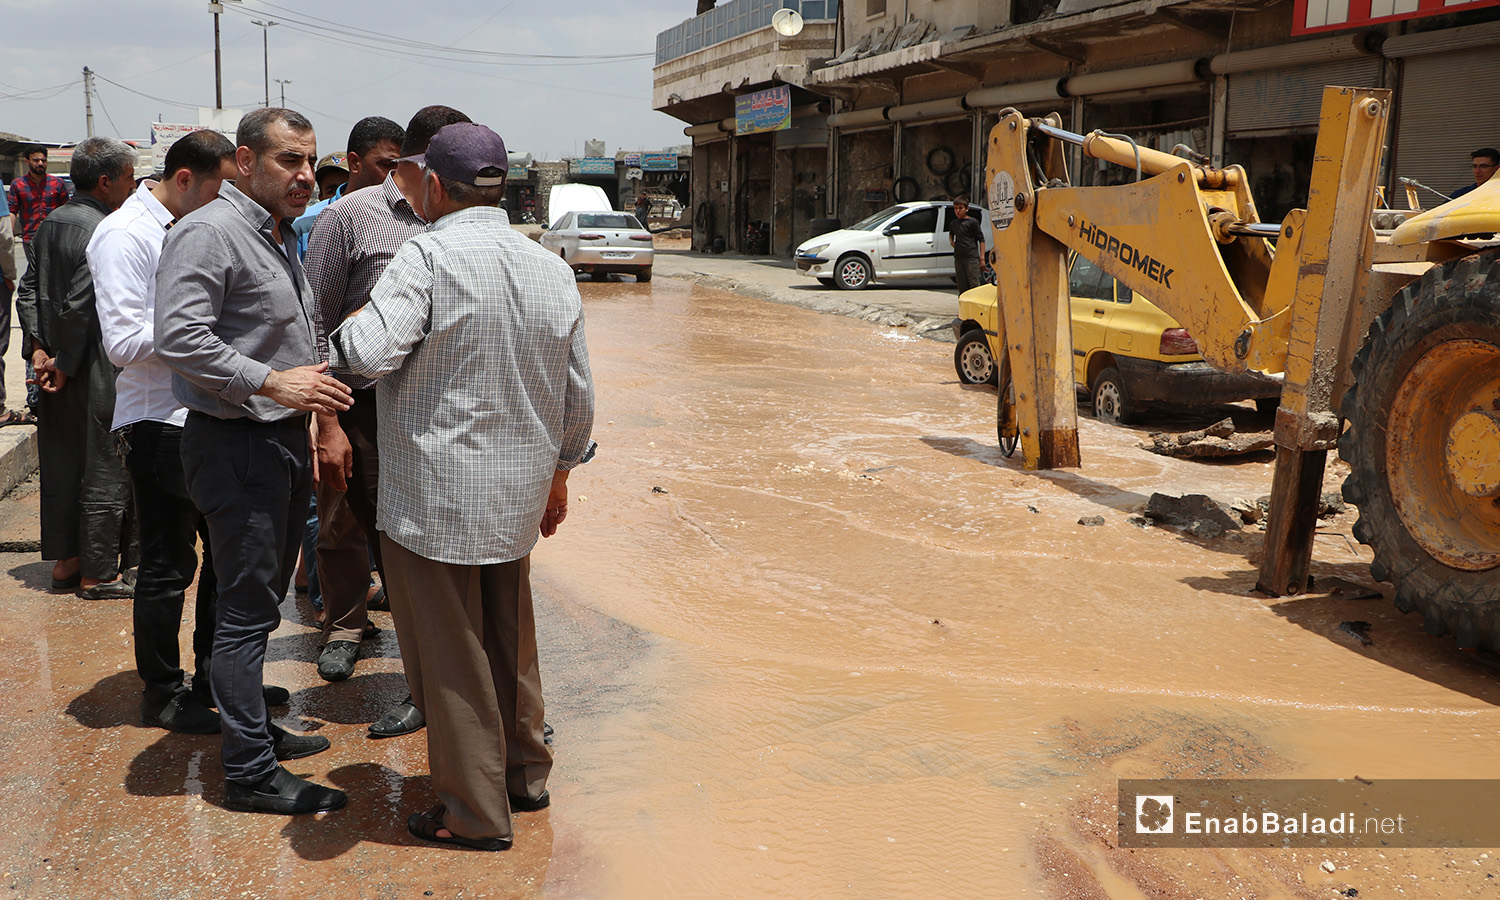 موظفون يقومون بصيانة أنابيب شبكة المياه في مدينة الباب بريف حلب الشمالي - 20 حزيران 2020 (عنب بلدي)